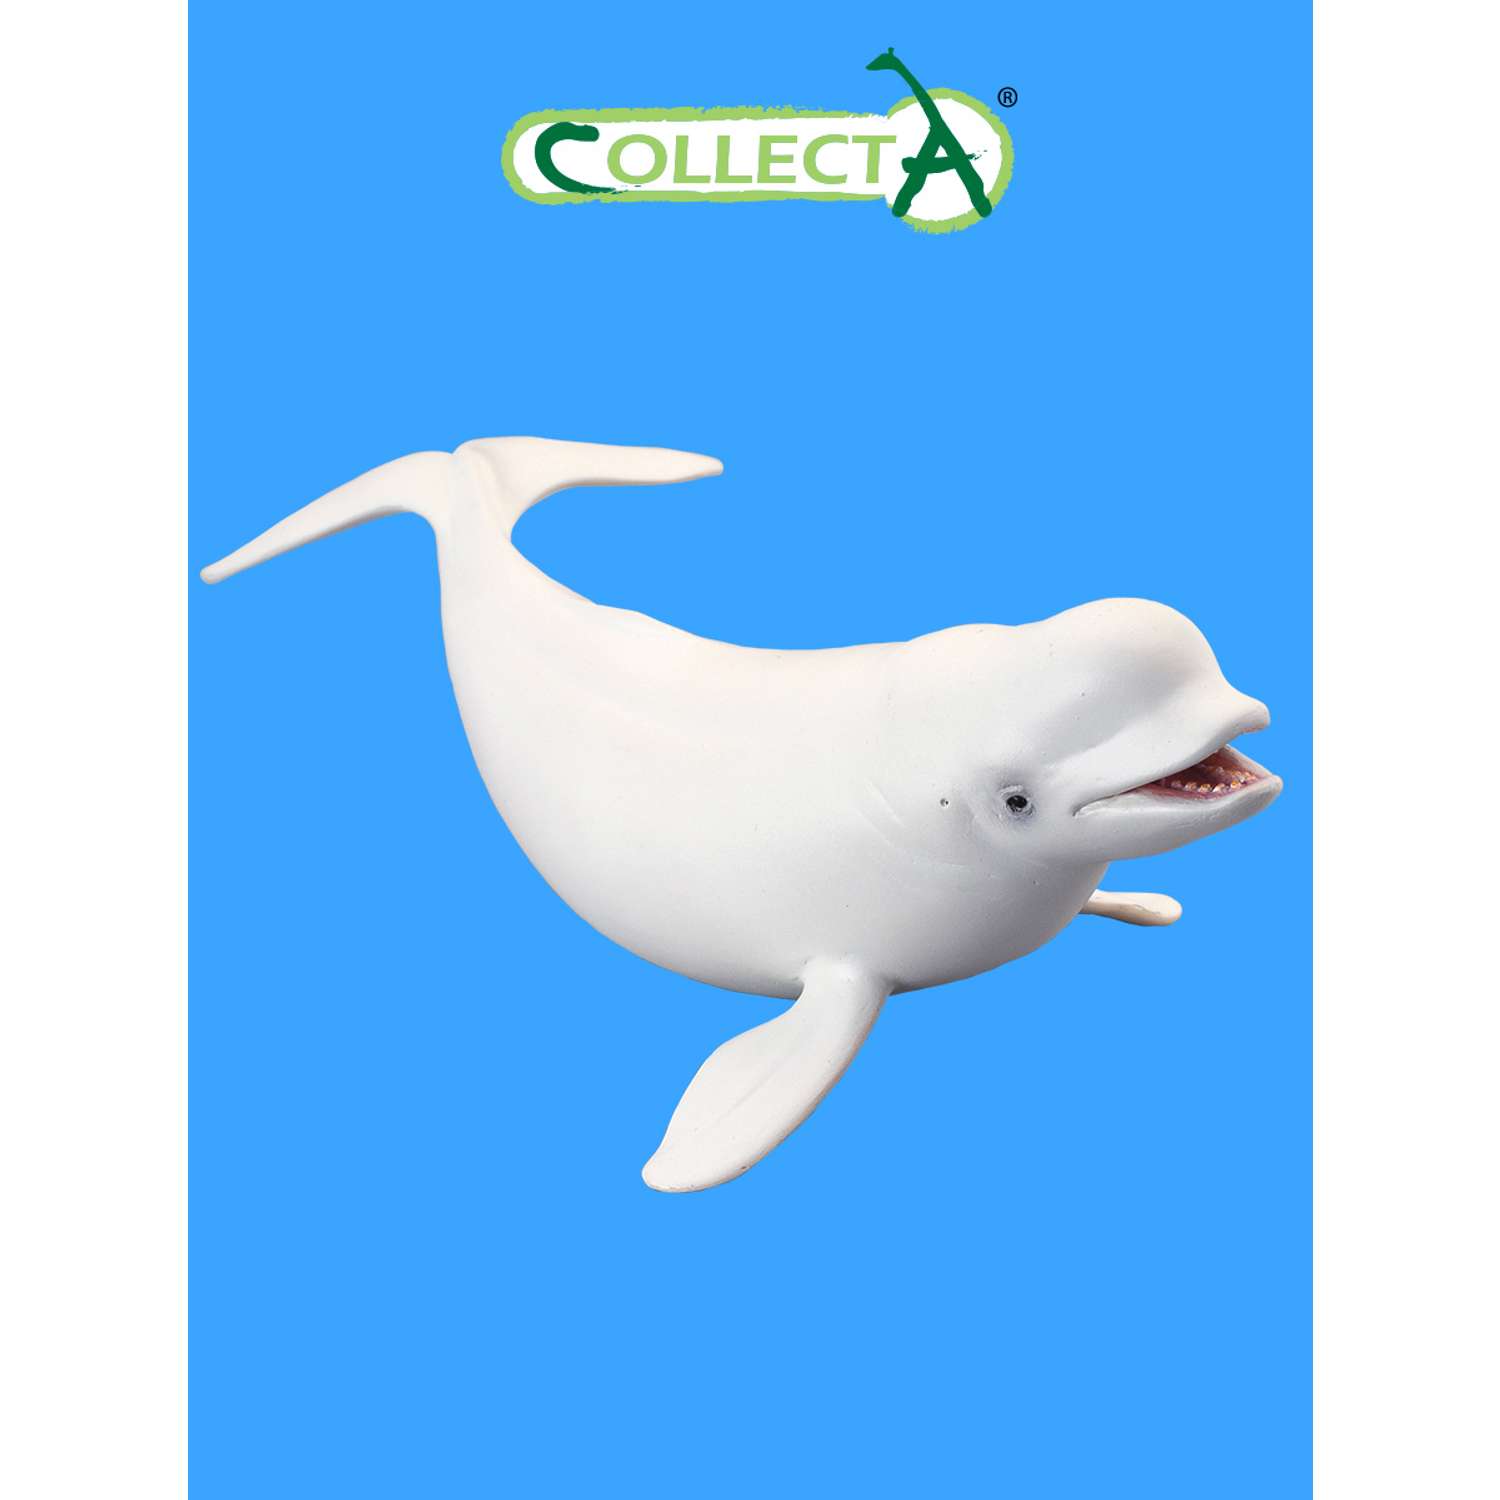 Игрушка Collecta Белуха фигурка морского животного - фото 1